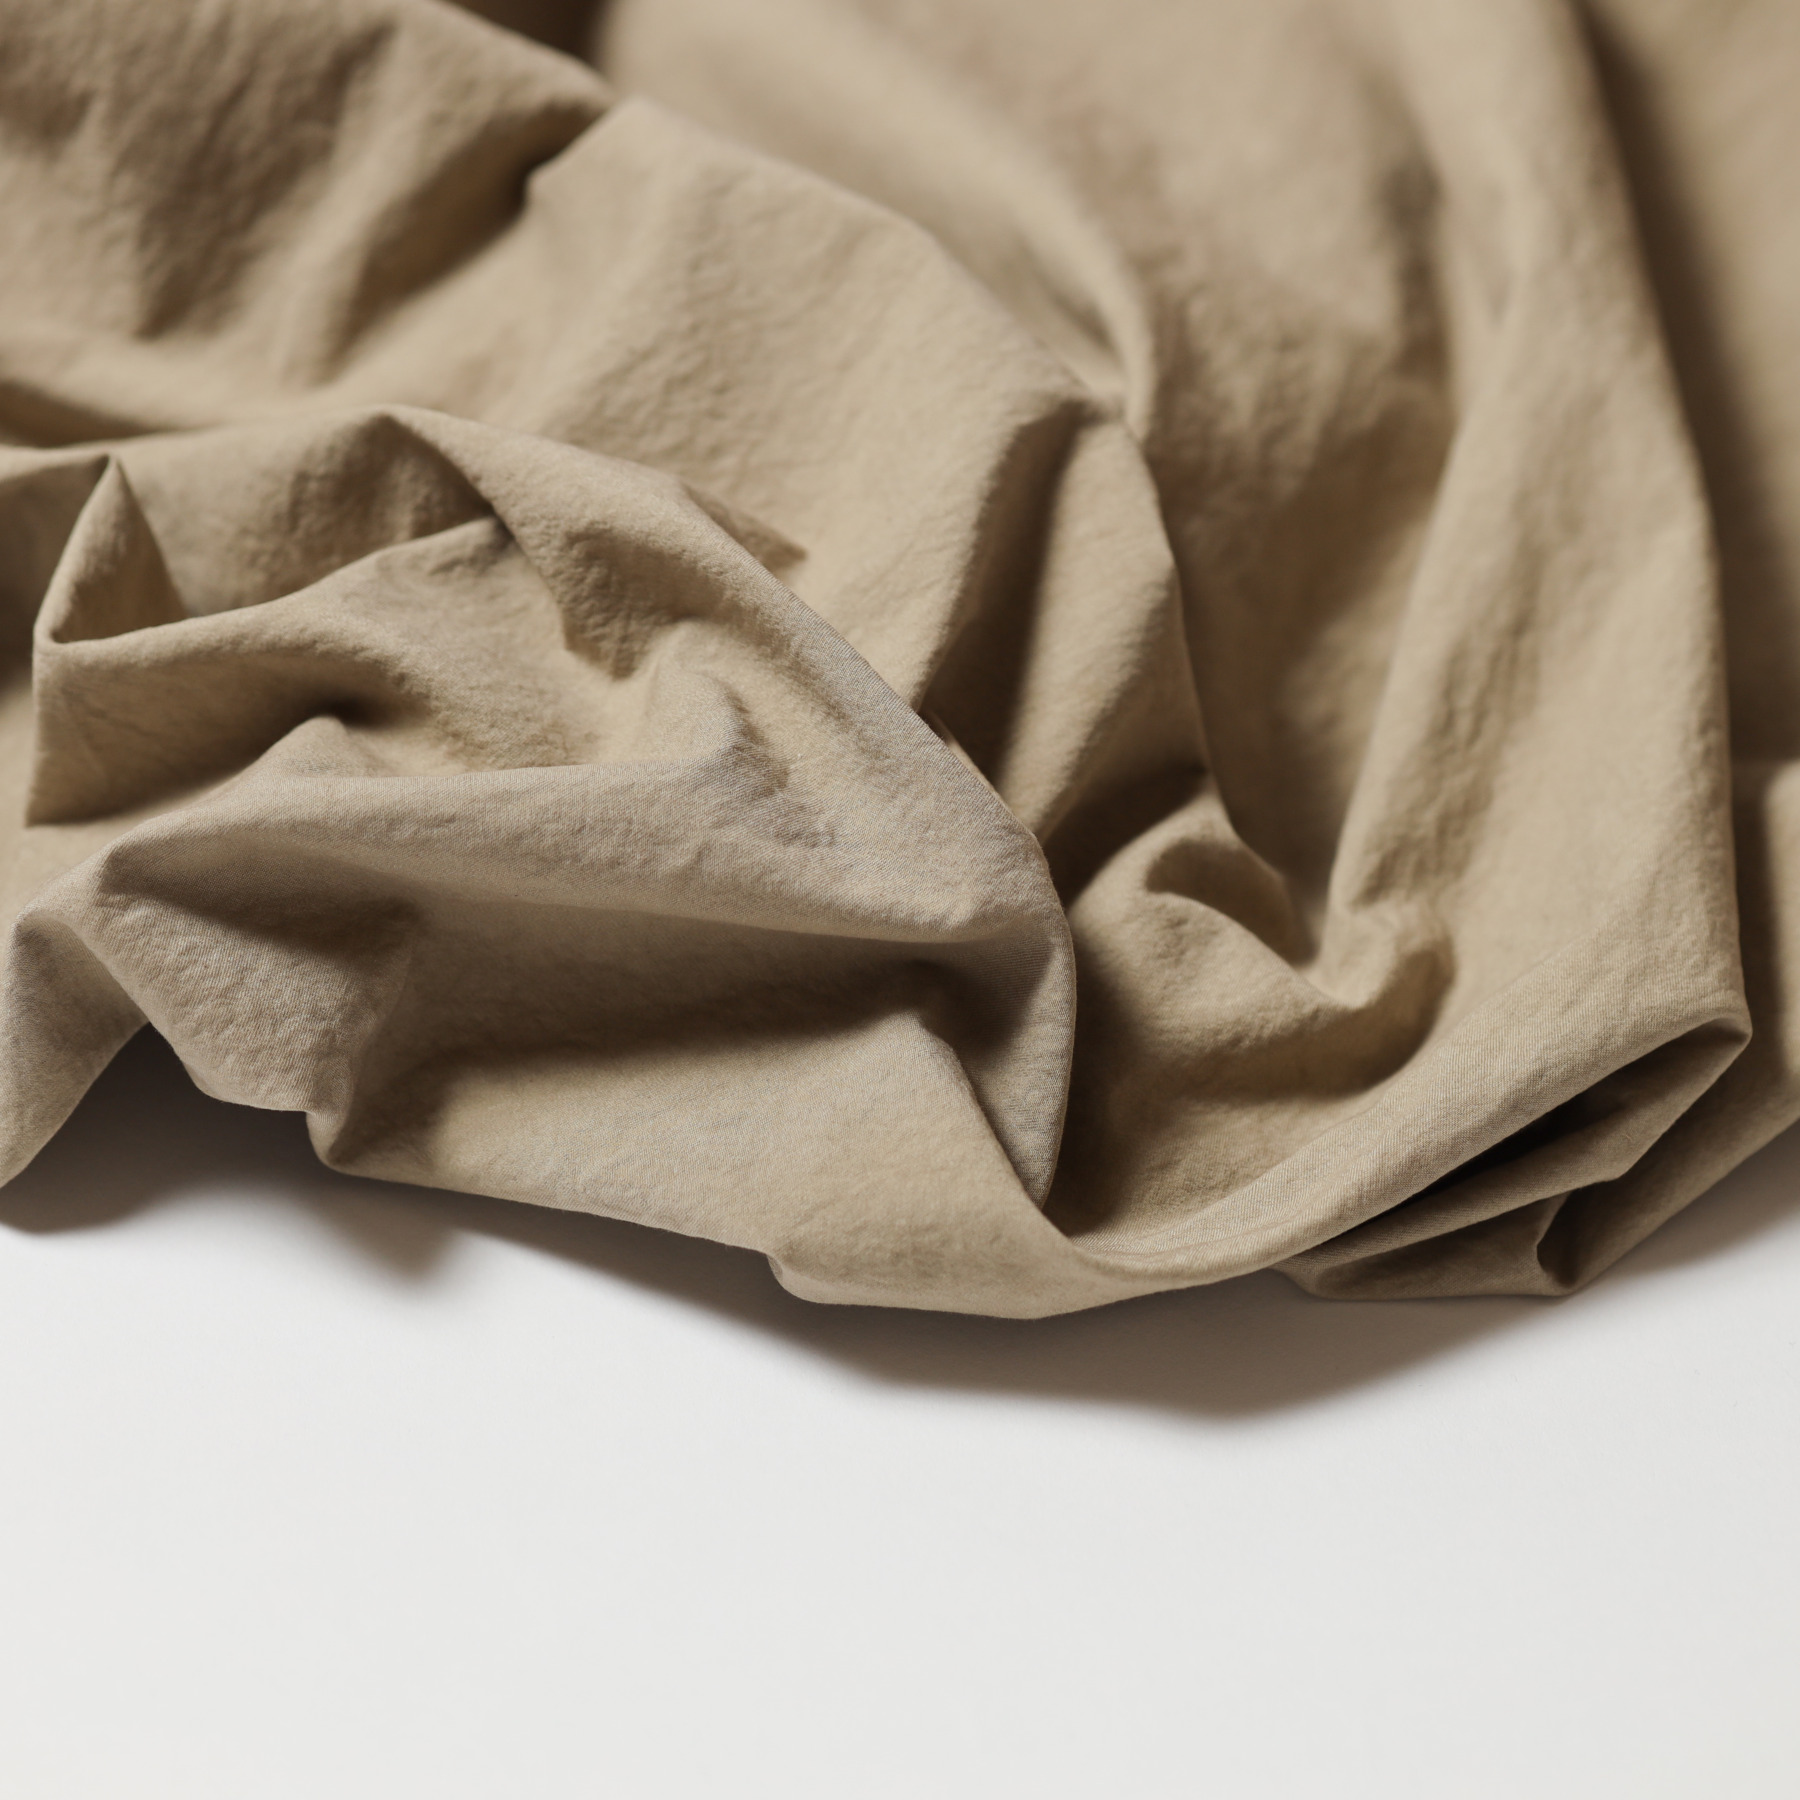 Daruma Fabric / Clay - Suna